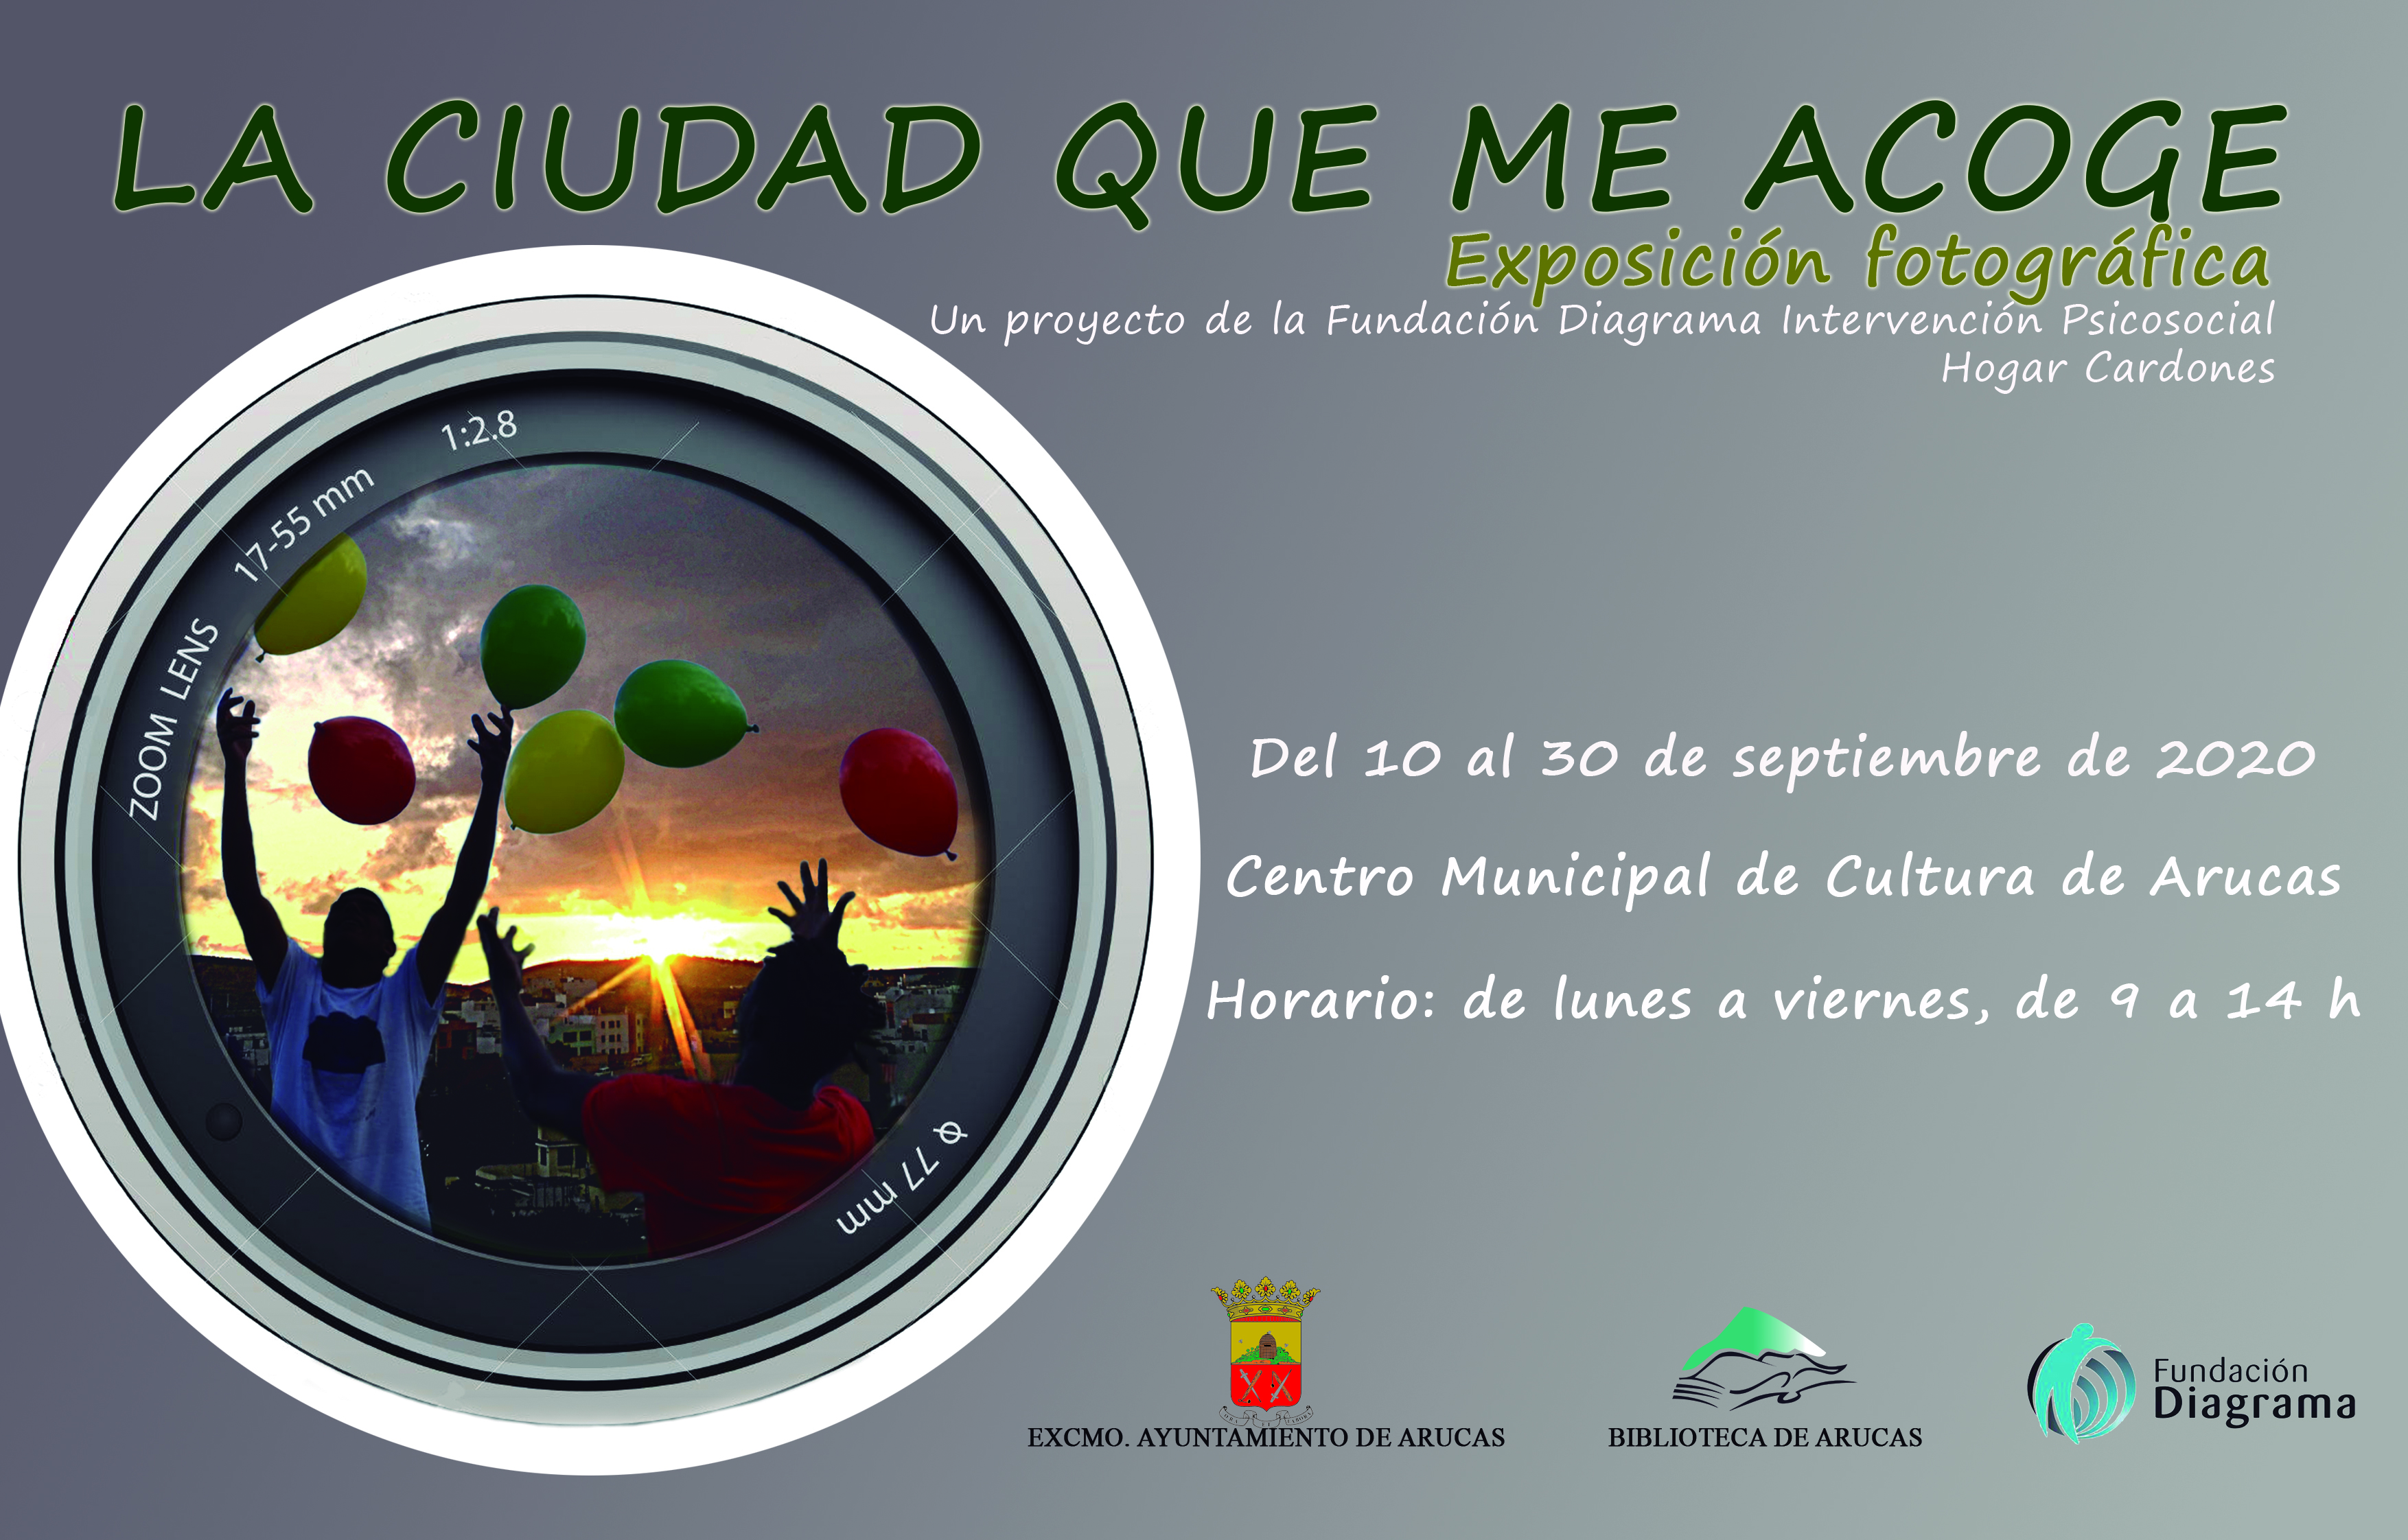 Cartel de la exposición Fotográfica “La ciudad que me acoge”, Arucas. Gran Canaria